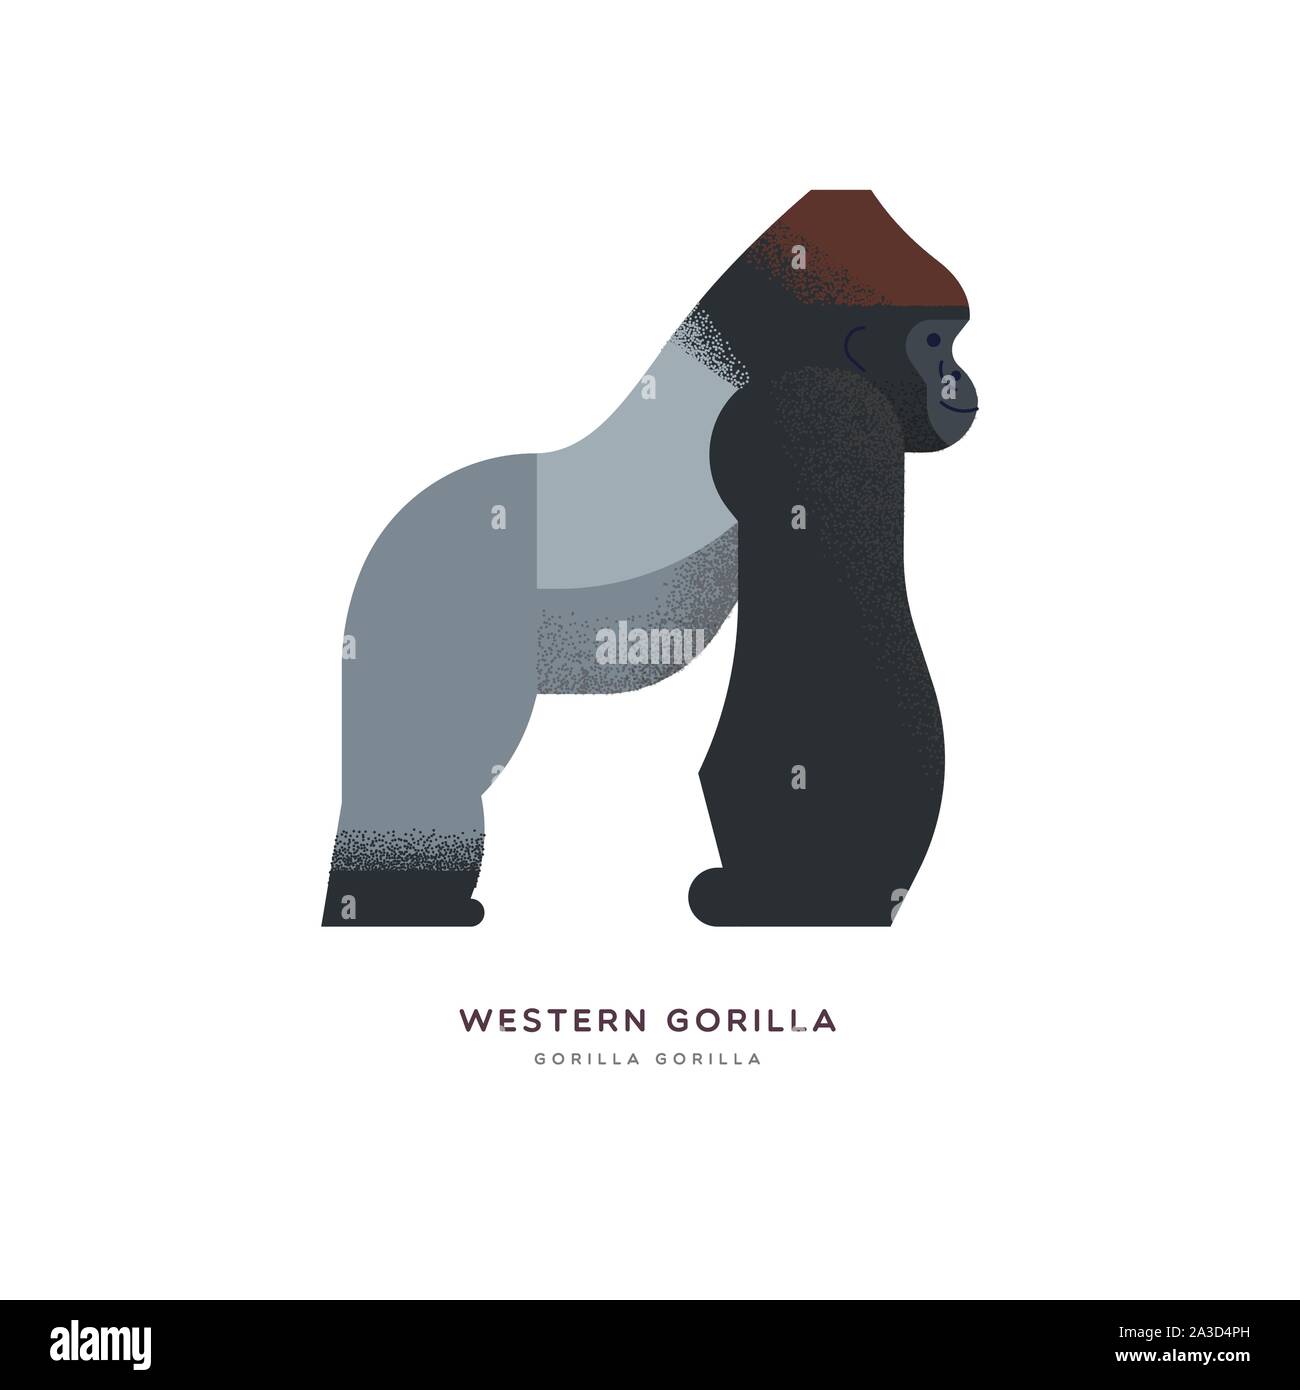 Western gorilla Abbildung auf isoliert weißer Hintergrund, African Safari animal Konzept. Pädagogische wildlife Design mit Pflanzenarten Name Label. Stock Vektor